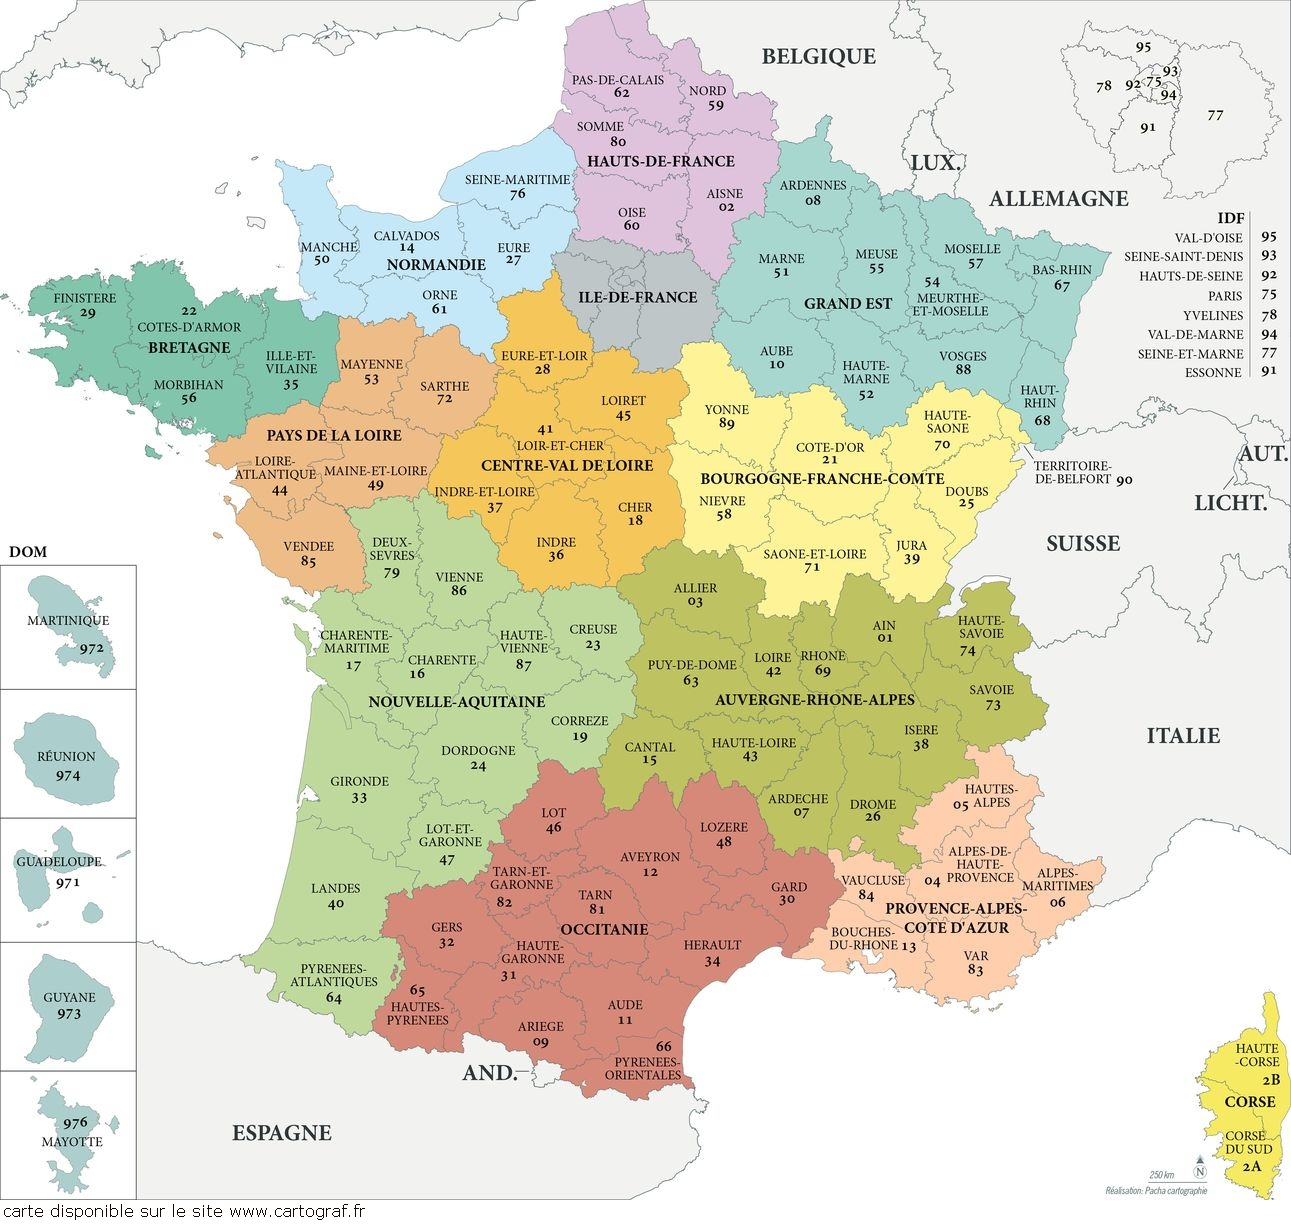 Cartograf.fr : Carte De La France : Page 2 tout Apprendre Les Départements En S Amusant